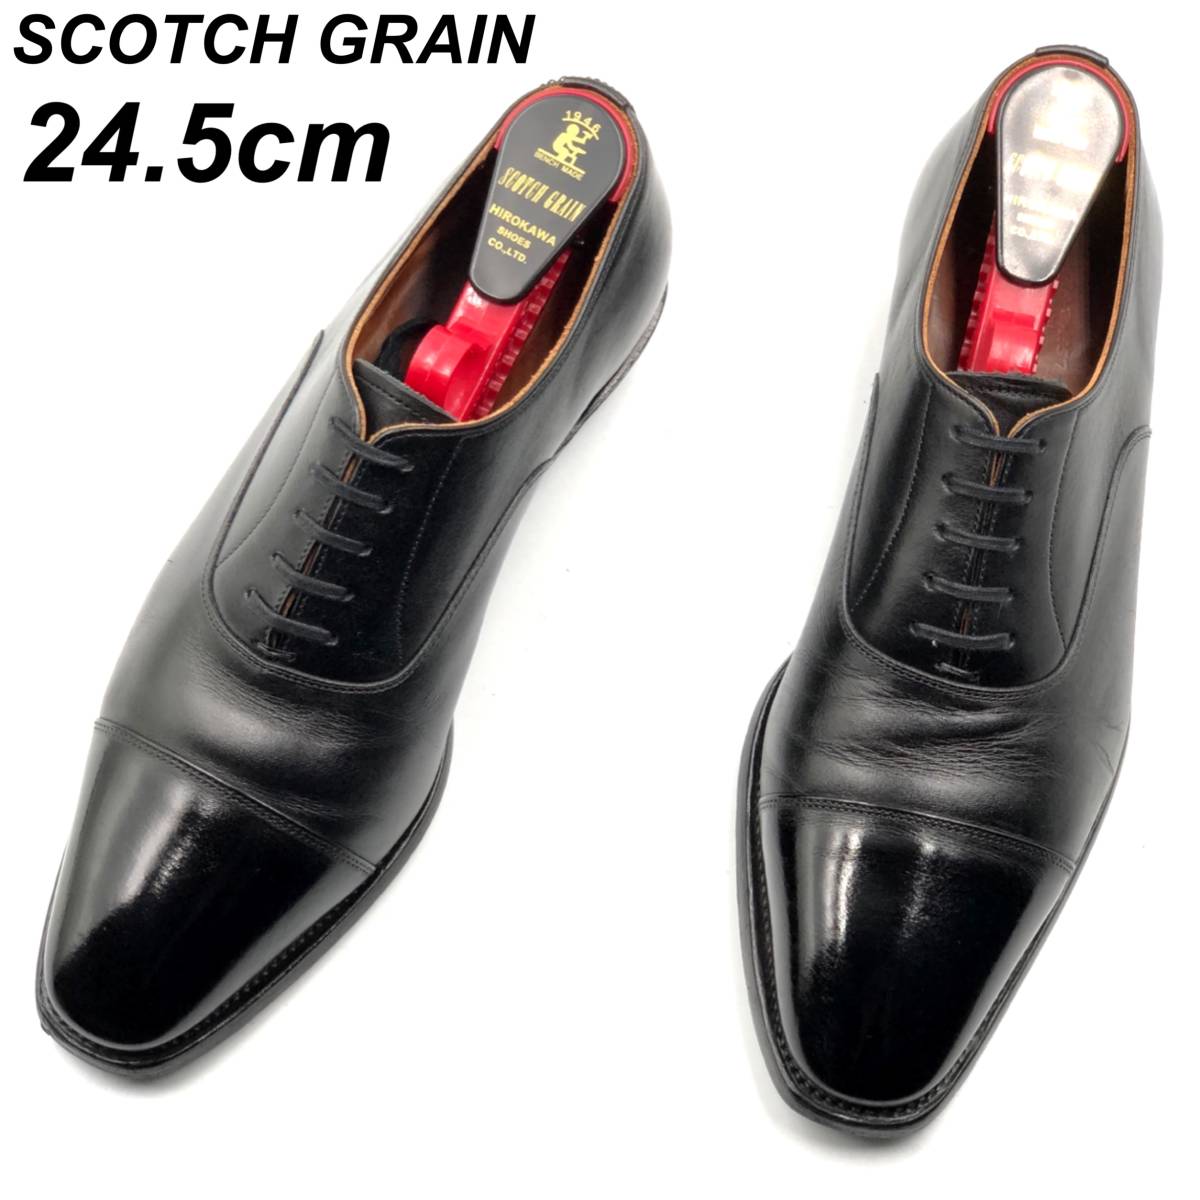 即決 SCOTCH GRAIN スコッチグレイン 高島屋別注 24.5cm TS200 メンズ レザーシューズ ストレートチップ 黒 ブラック 革靴  皮靴 ビジネス